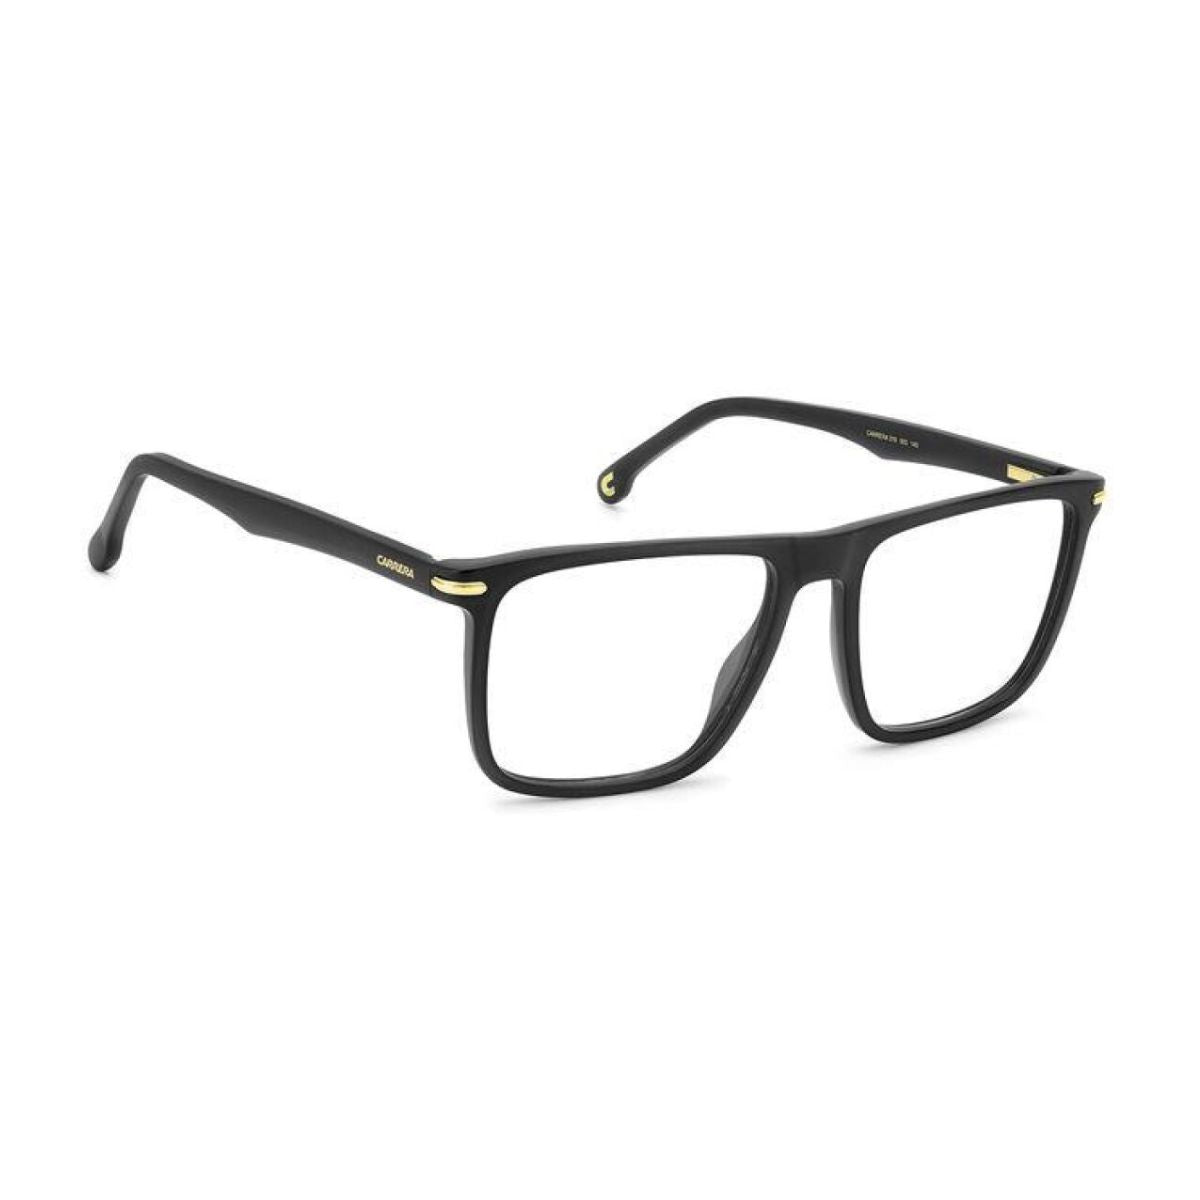 "Carrera 319 003 trendy eyewear frame for men's at optorium"